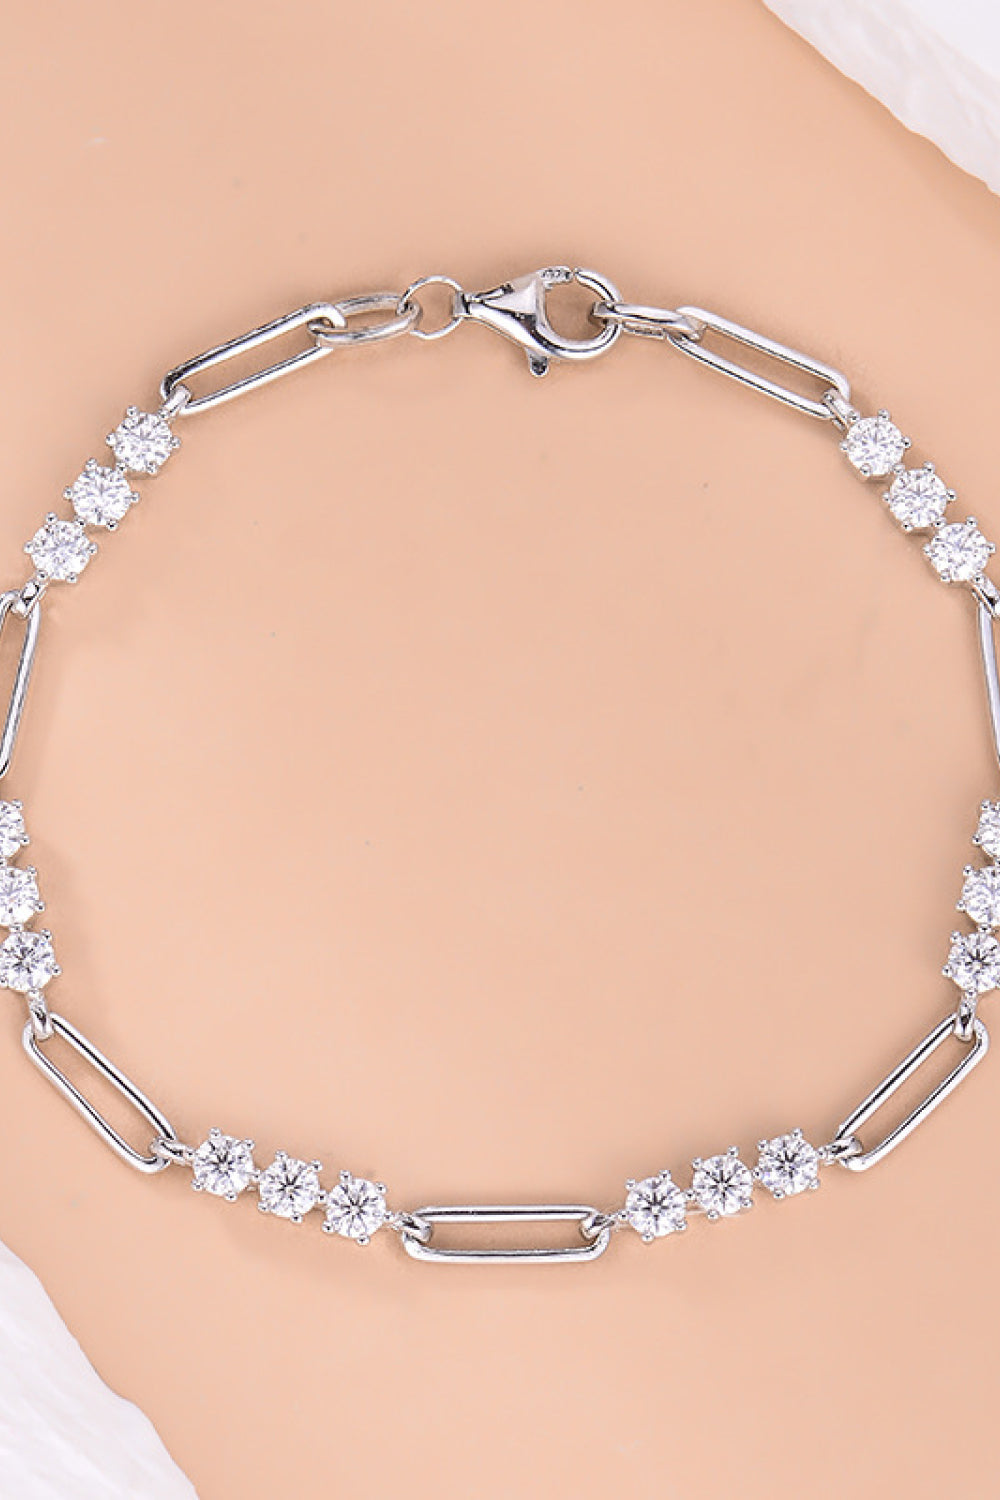 1.8 Carat Moissanite 925 Sterling Silver Bracelet - Women’s Jewelry - Bracelets - 3 - 2024